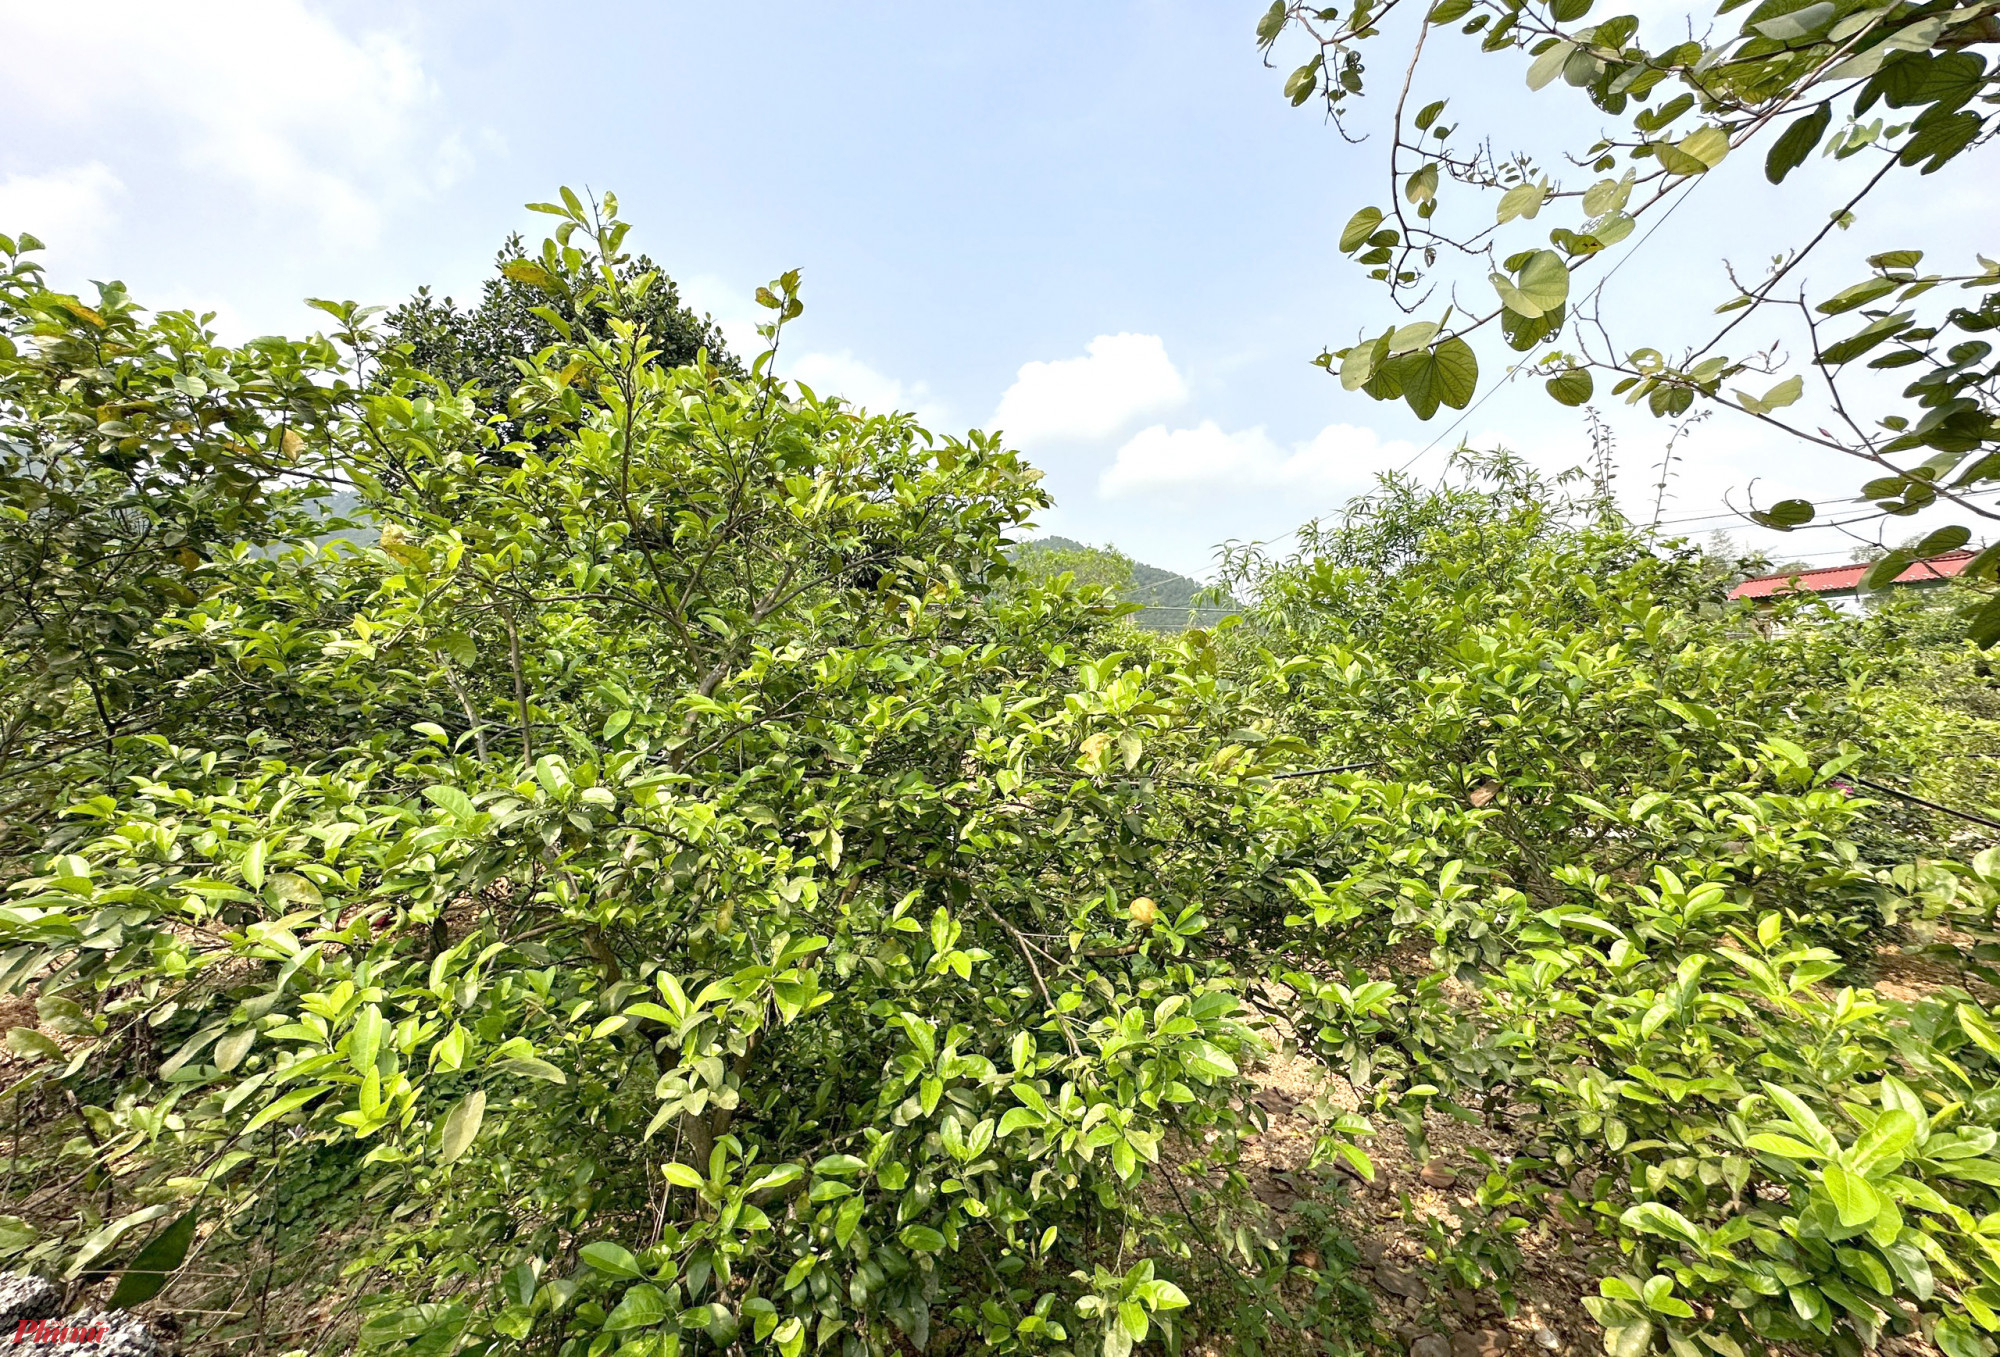 Xã Nam Kim (huyện Nam Đàn, Nghệ An) hiện có hơn 200ha cây chanh, được trồng chủ yếu dưới chân núi Thiên Nhẫn. Lãnh đạo xã Nam Kim cho hay, cây chanh được trồng ở địa phương này từ hàng chục năm trước, là một trong những cây trồng đem lại nguồn thu nhập chính cho người dân xã này.